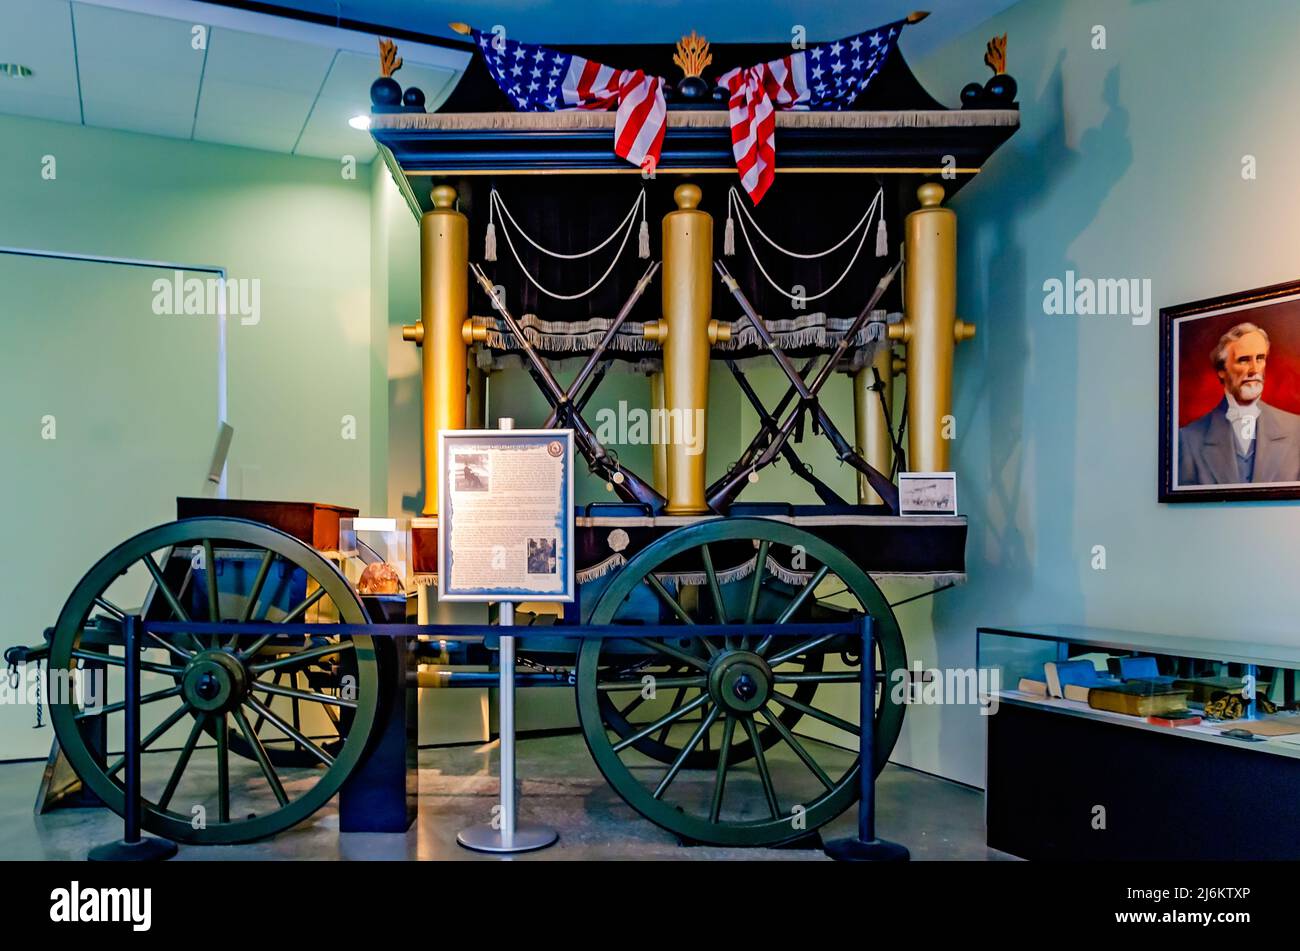 Die Katafalque, ein Begräbniswagen für den konföderierten Präsidenten Jefferson Davis, wird in der Jefferson Davis Presidential Library in Biloxi ausgestellt. Stockfoto